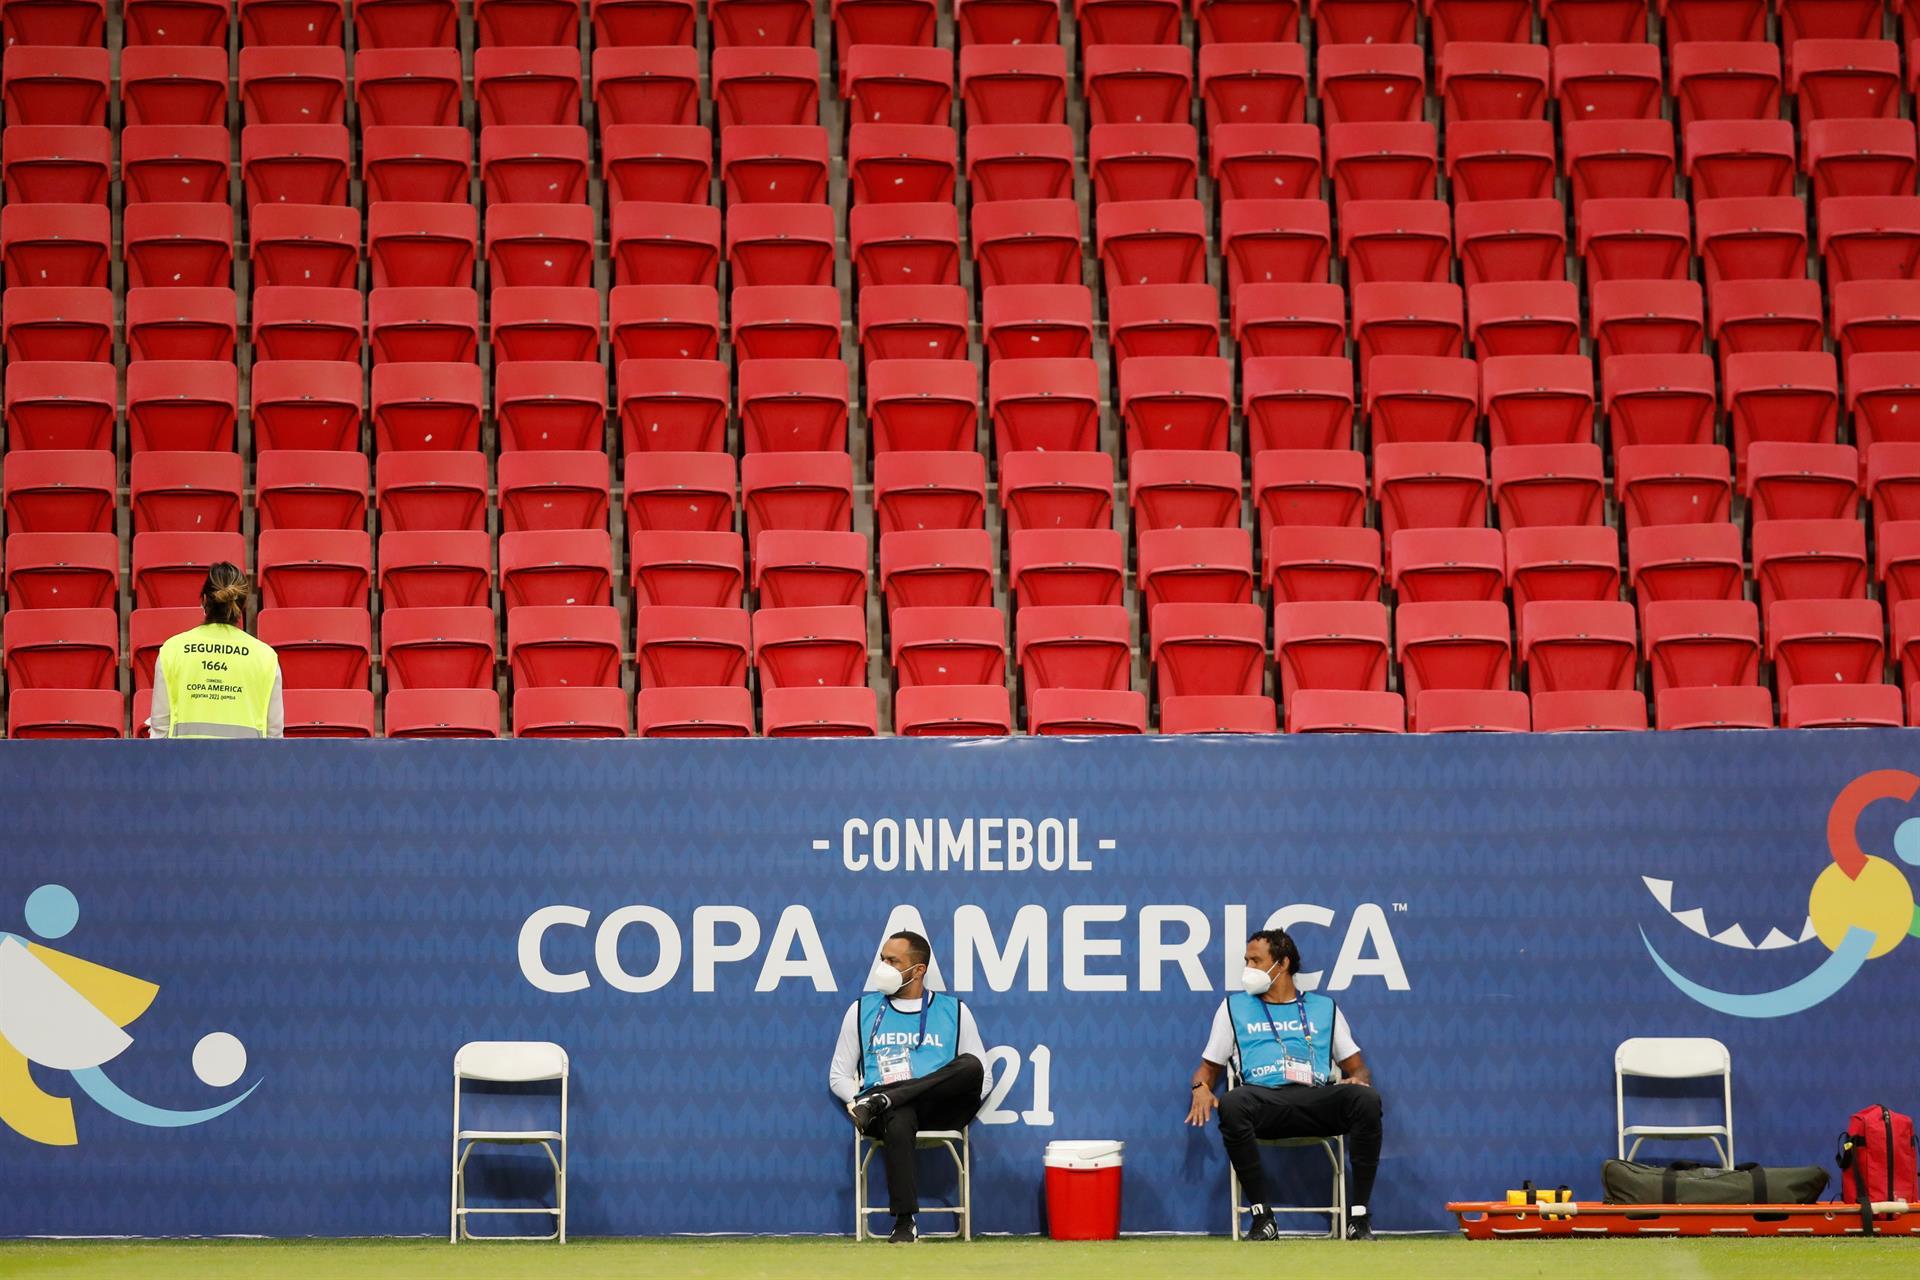 Relatório da Conmebol aponta 166 casos de Covid-19 na Copa América até o momento